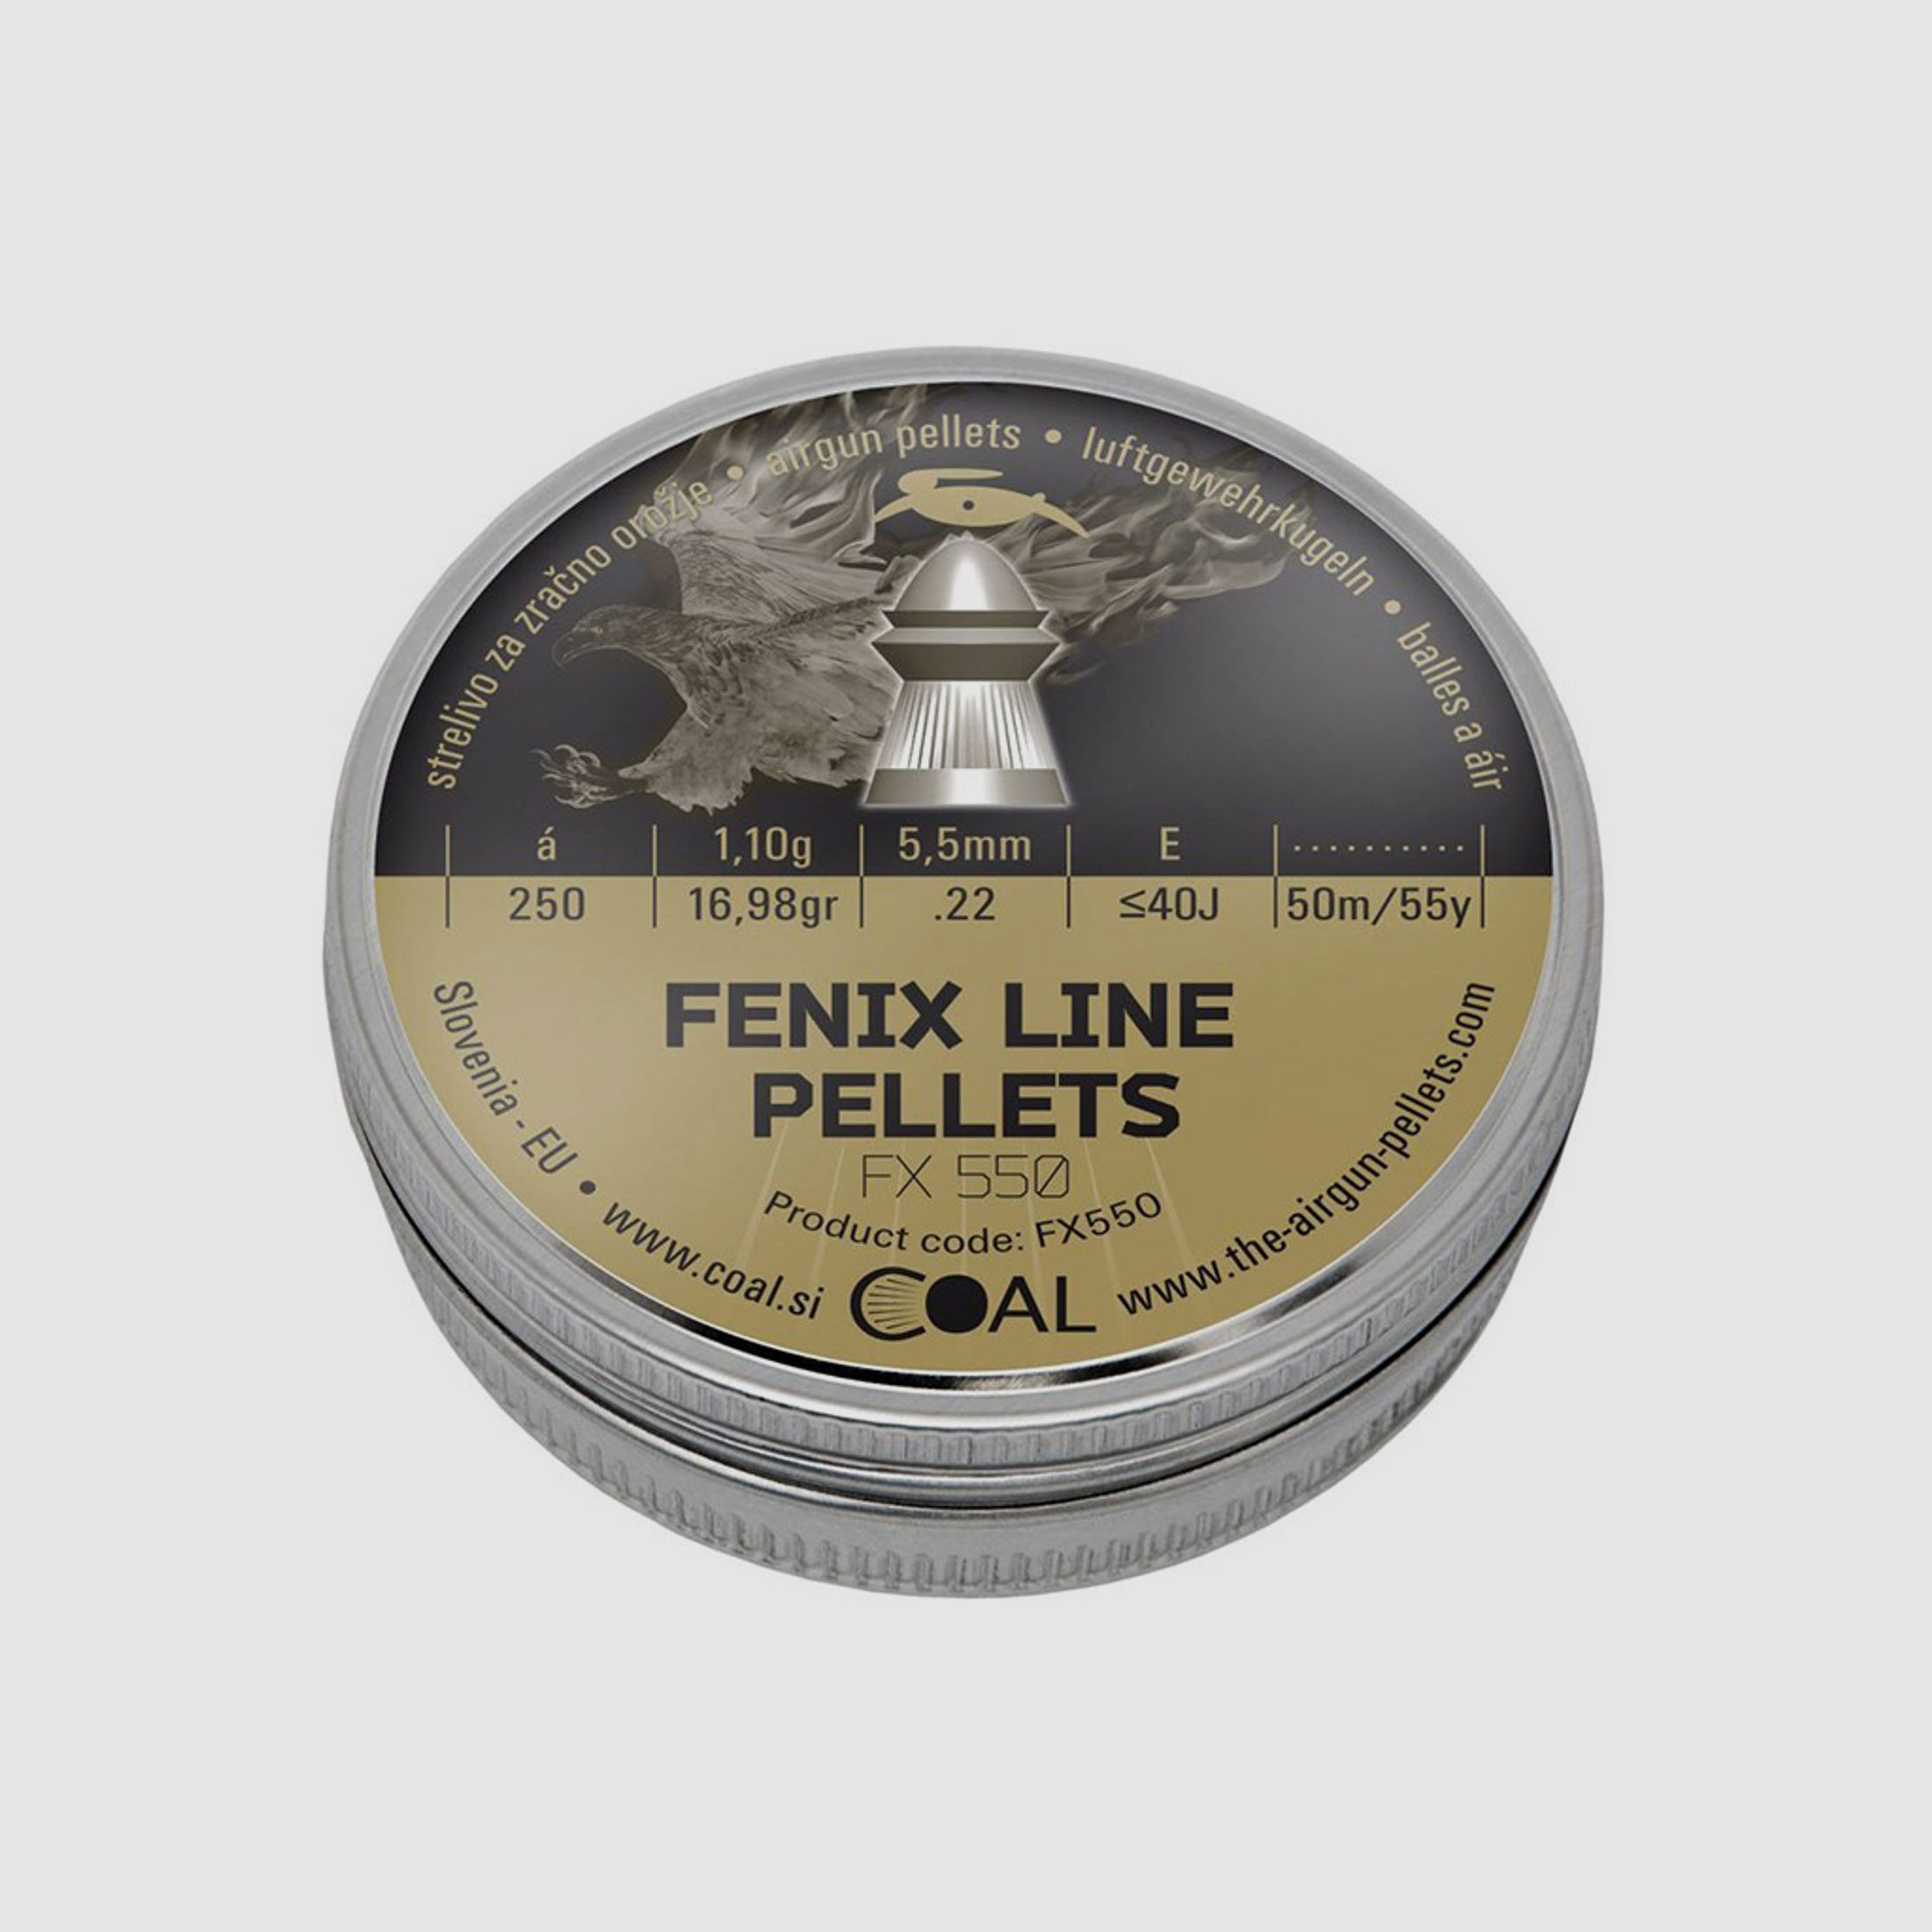 Coal Fenix Line Pellets Diabolos, Rundkopf, gerieffelt, 1,10 g, Kaliber 5,5 mm, 250 StĂĽck